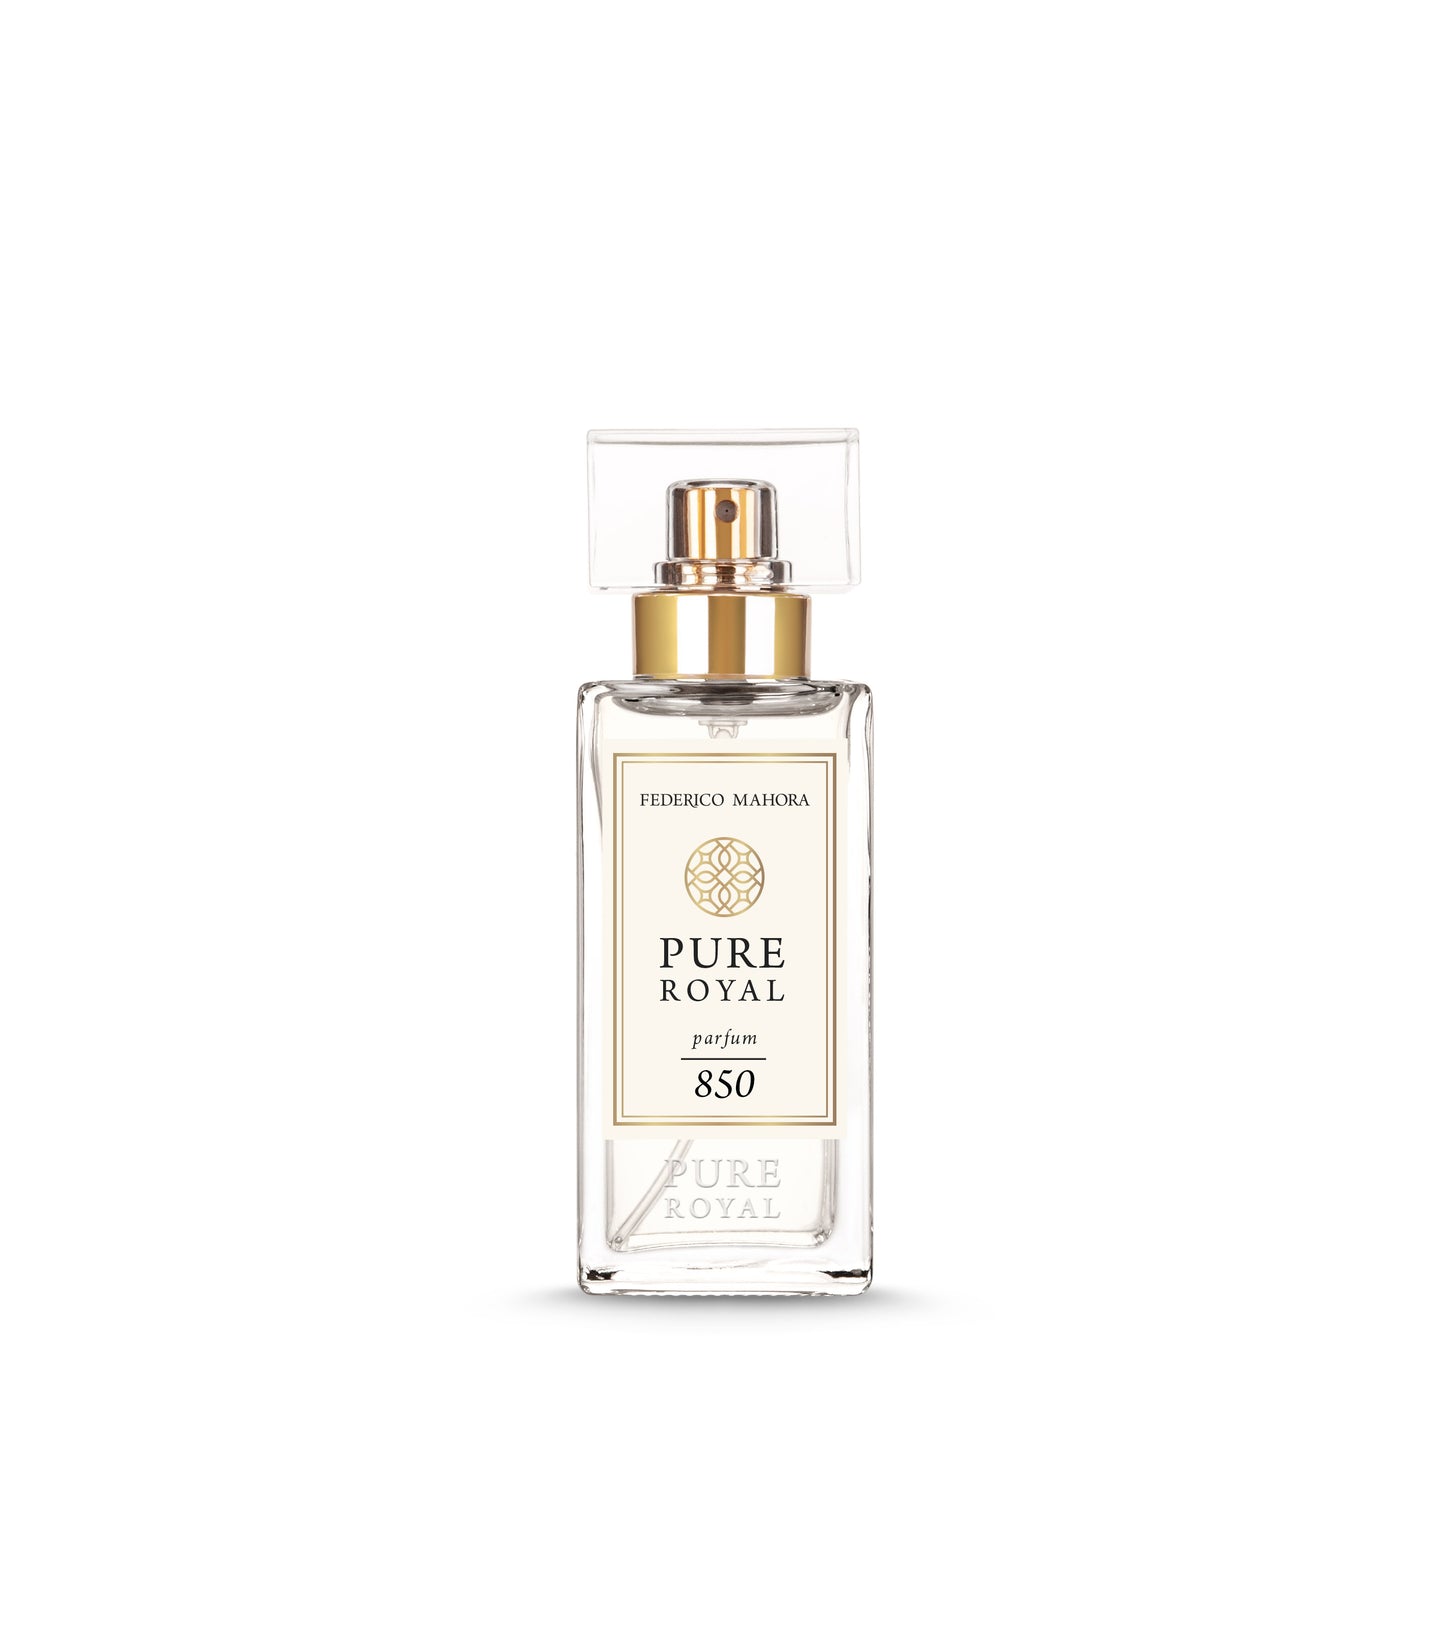 FM Pure Royal parfum 850